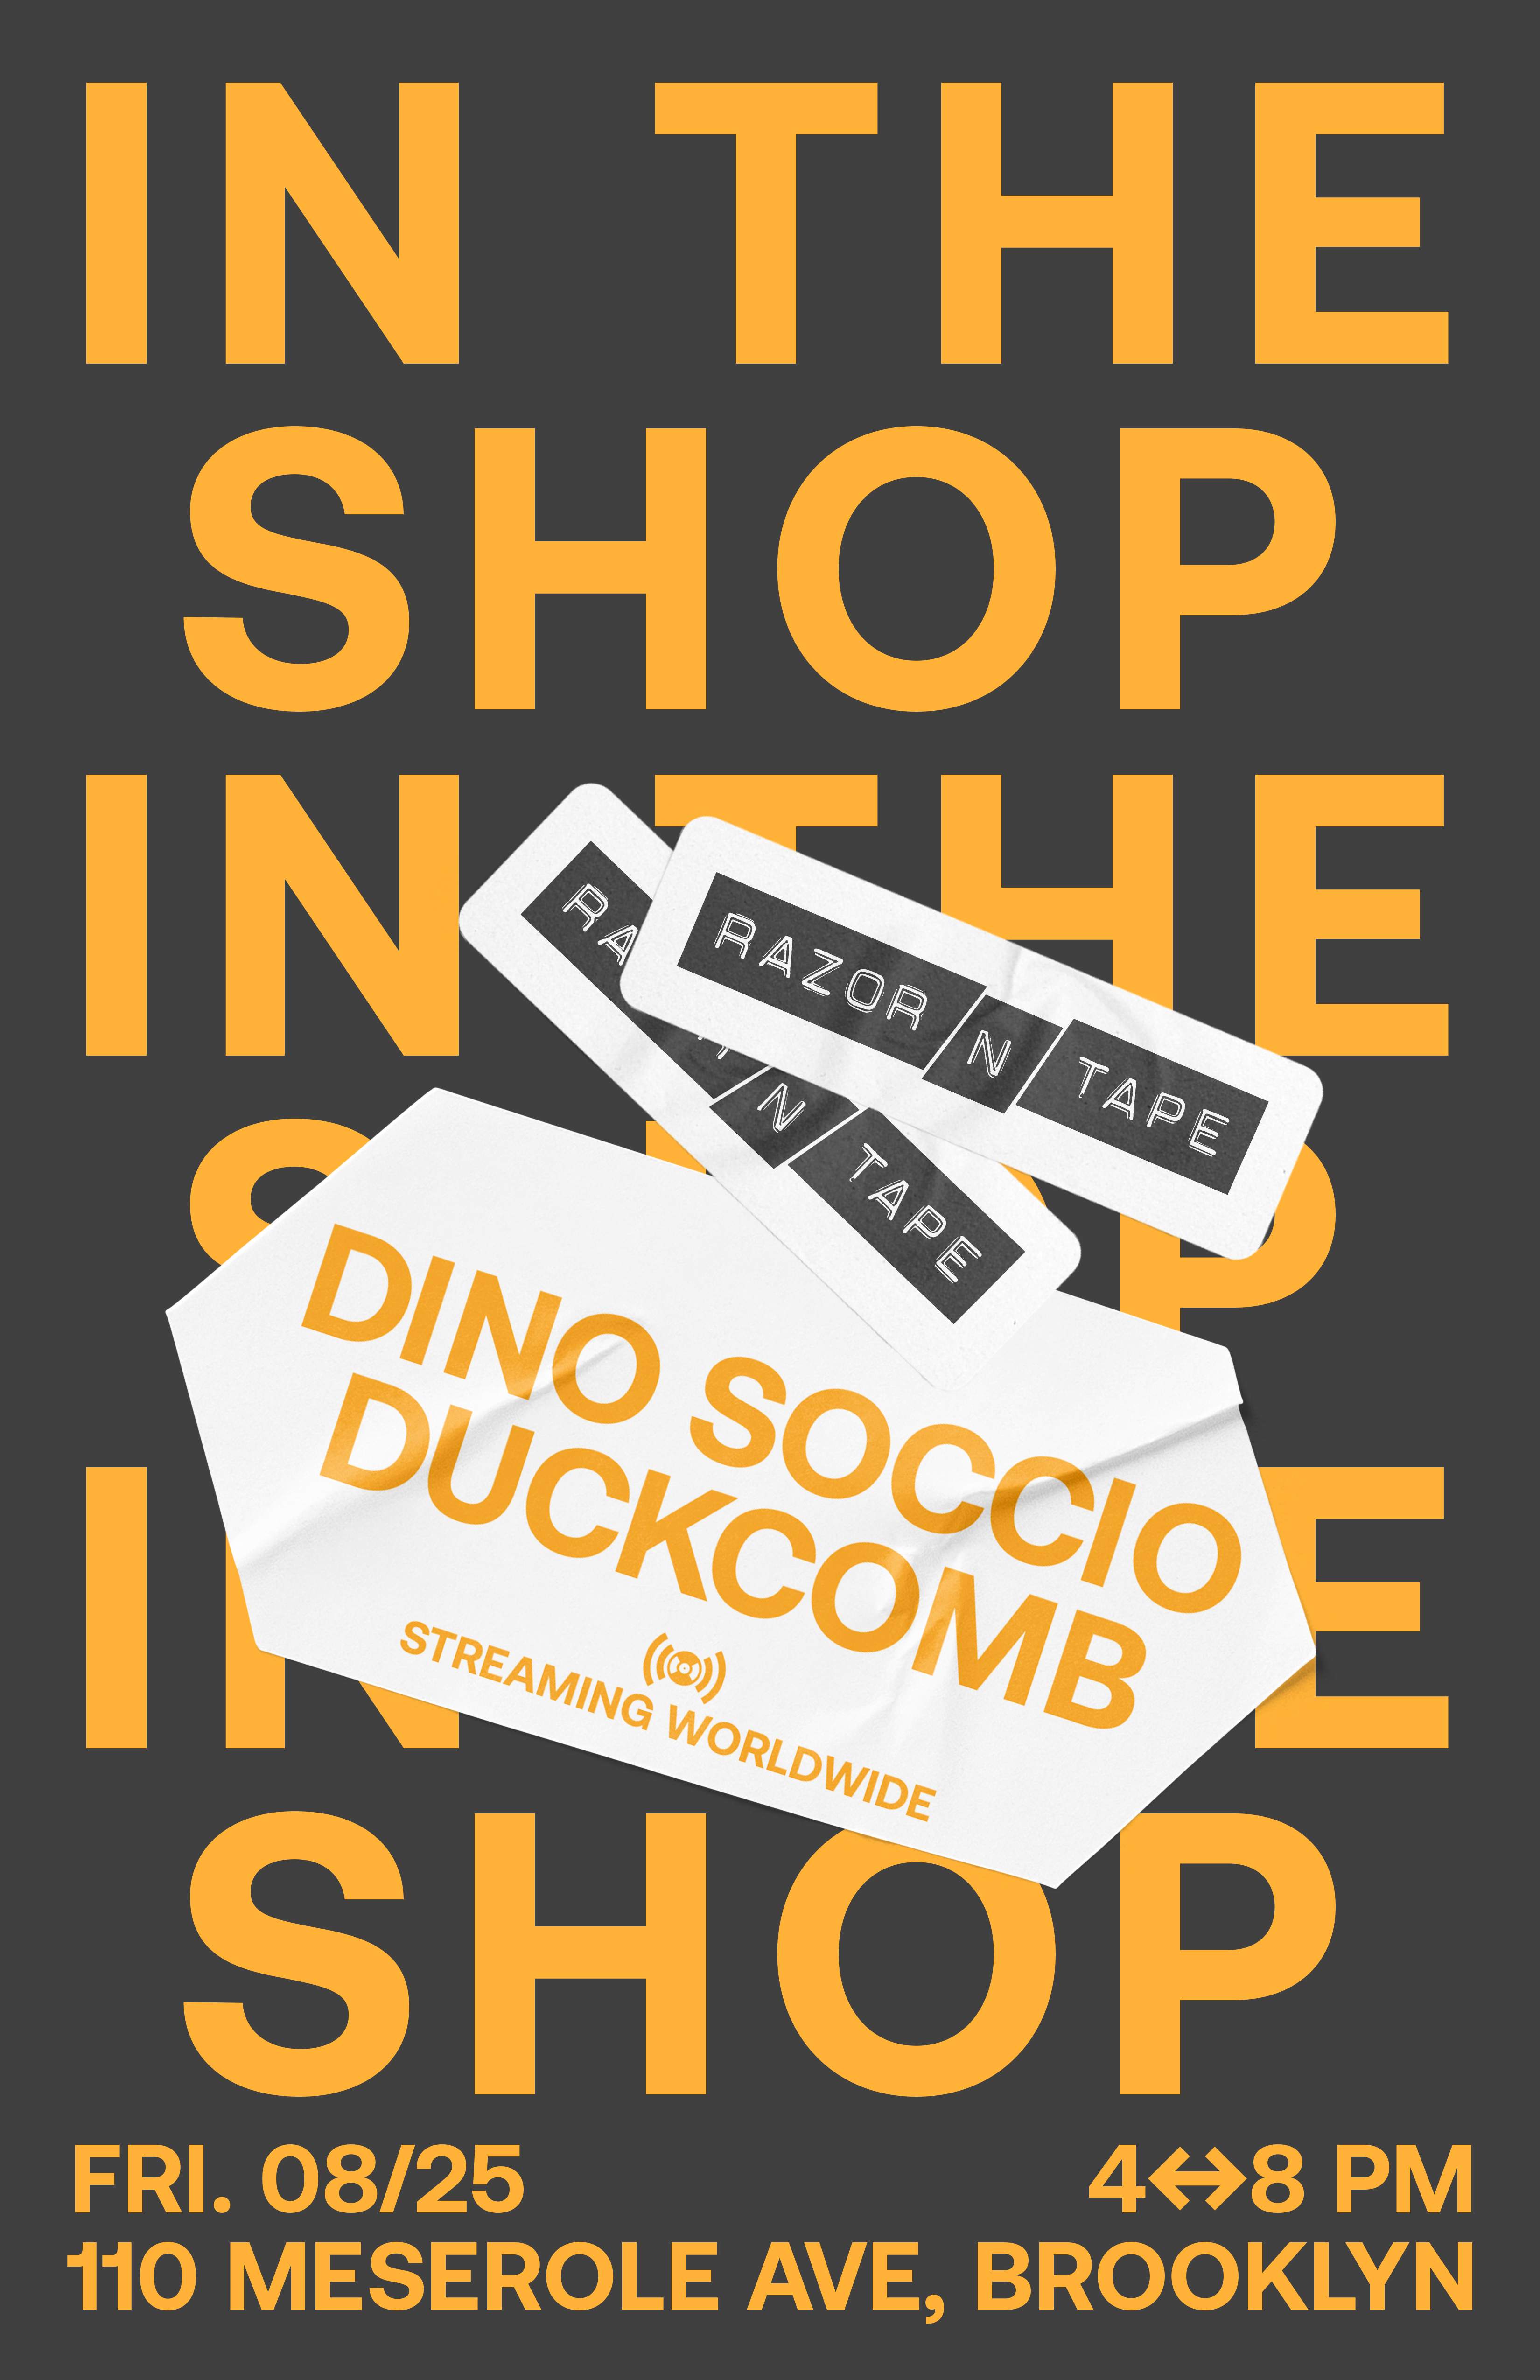 In The Shop: Dino Soccio & Duckcomb - フライヤー表